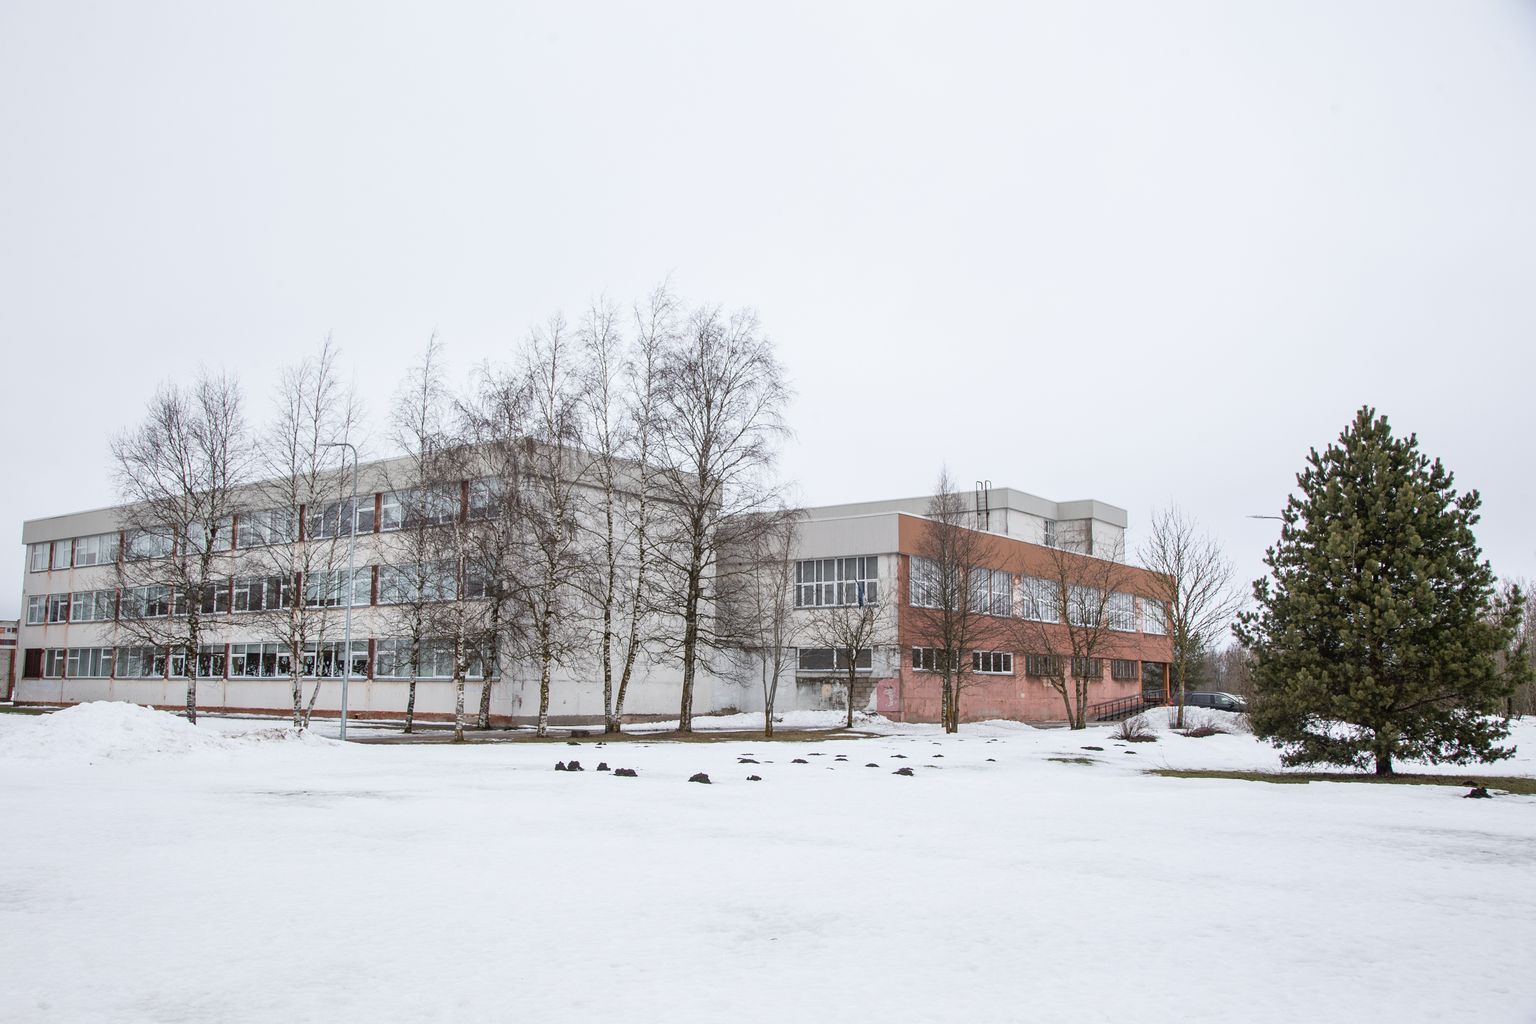 Среди школ Люганузеской волости в самой большой инвестиции нуждается Кивиылиская русская школа. По оценке ТОО "Cumulus Consulting", на обновление школьного здания потребуется шесть миллионов евро.